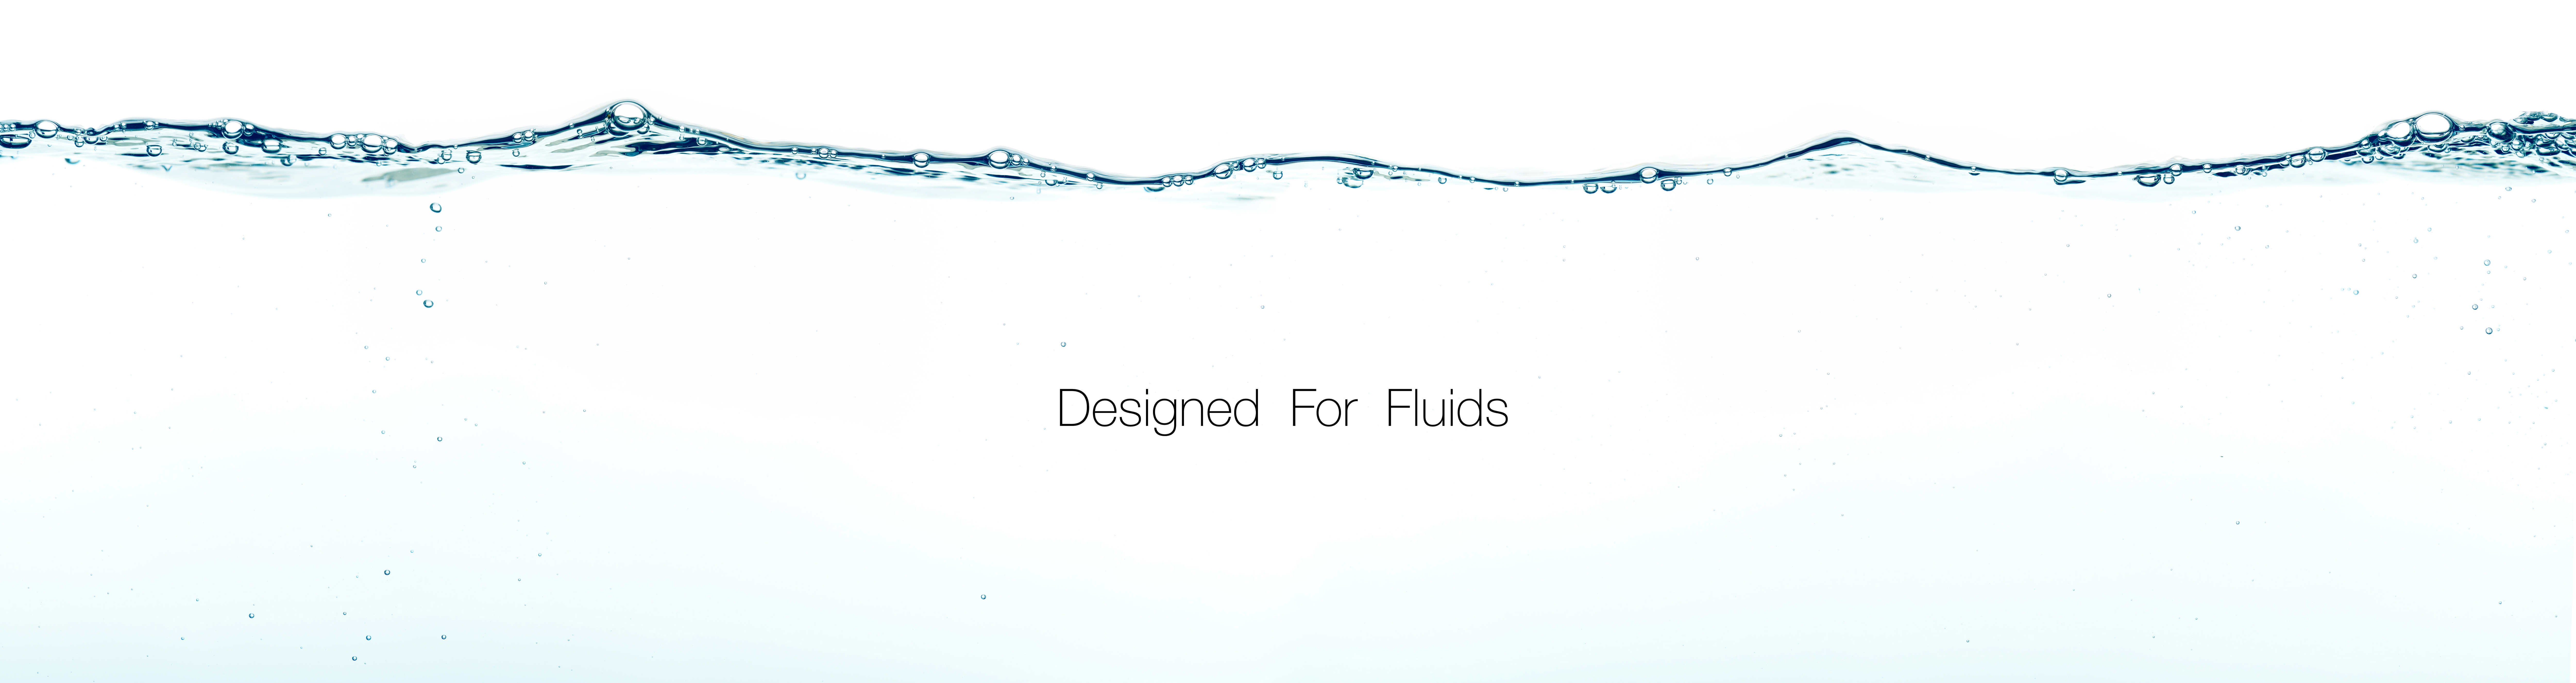 aluids designed for fluids